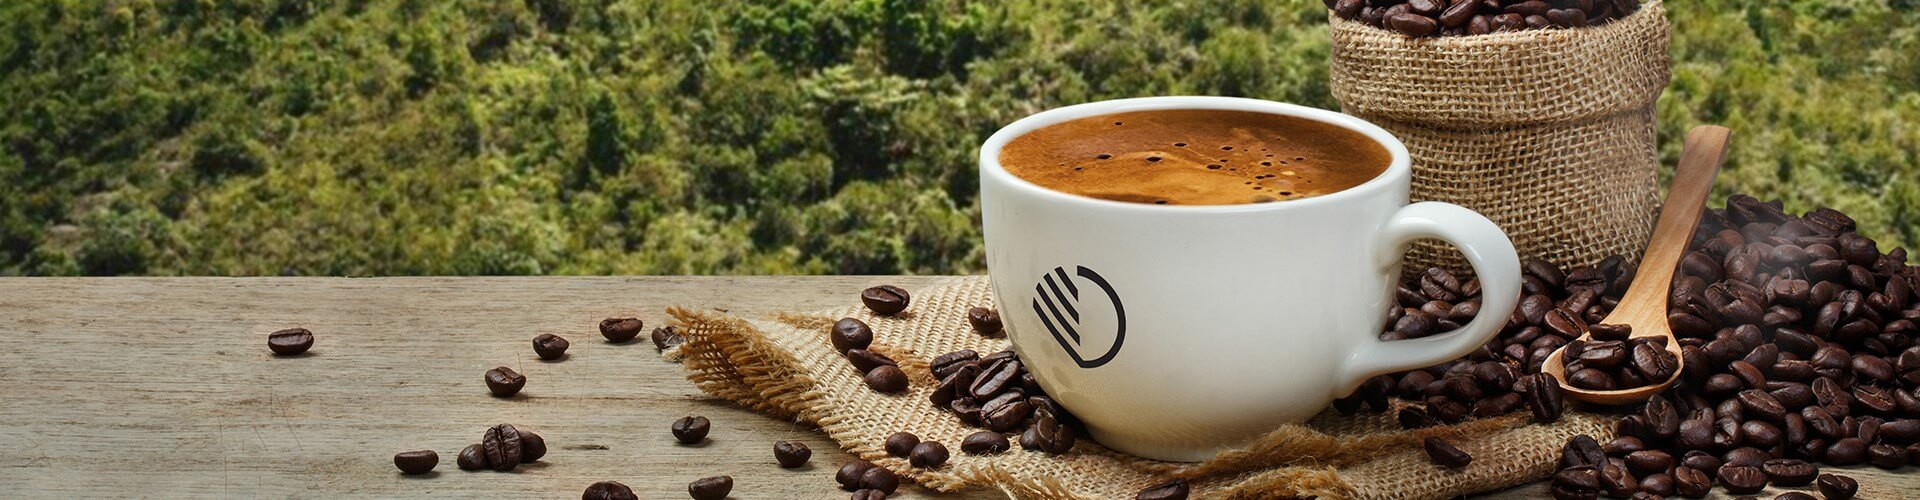 Duurzame koffiebeker en koffiebonen verkrijgbaar van Van Duijnen koffie